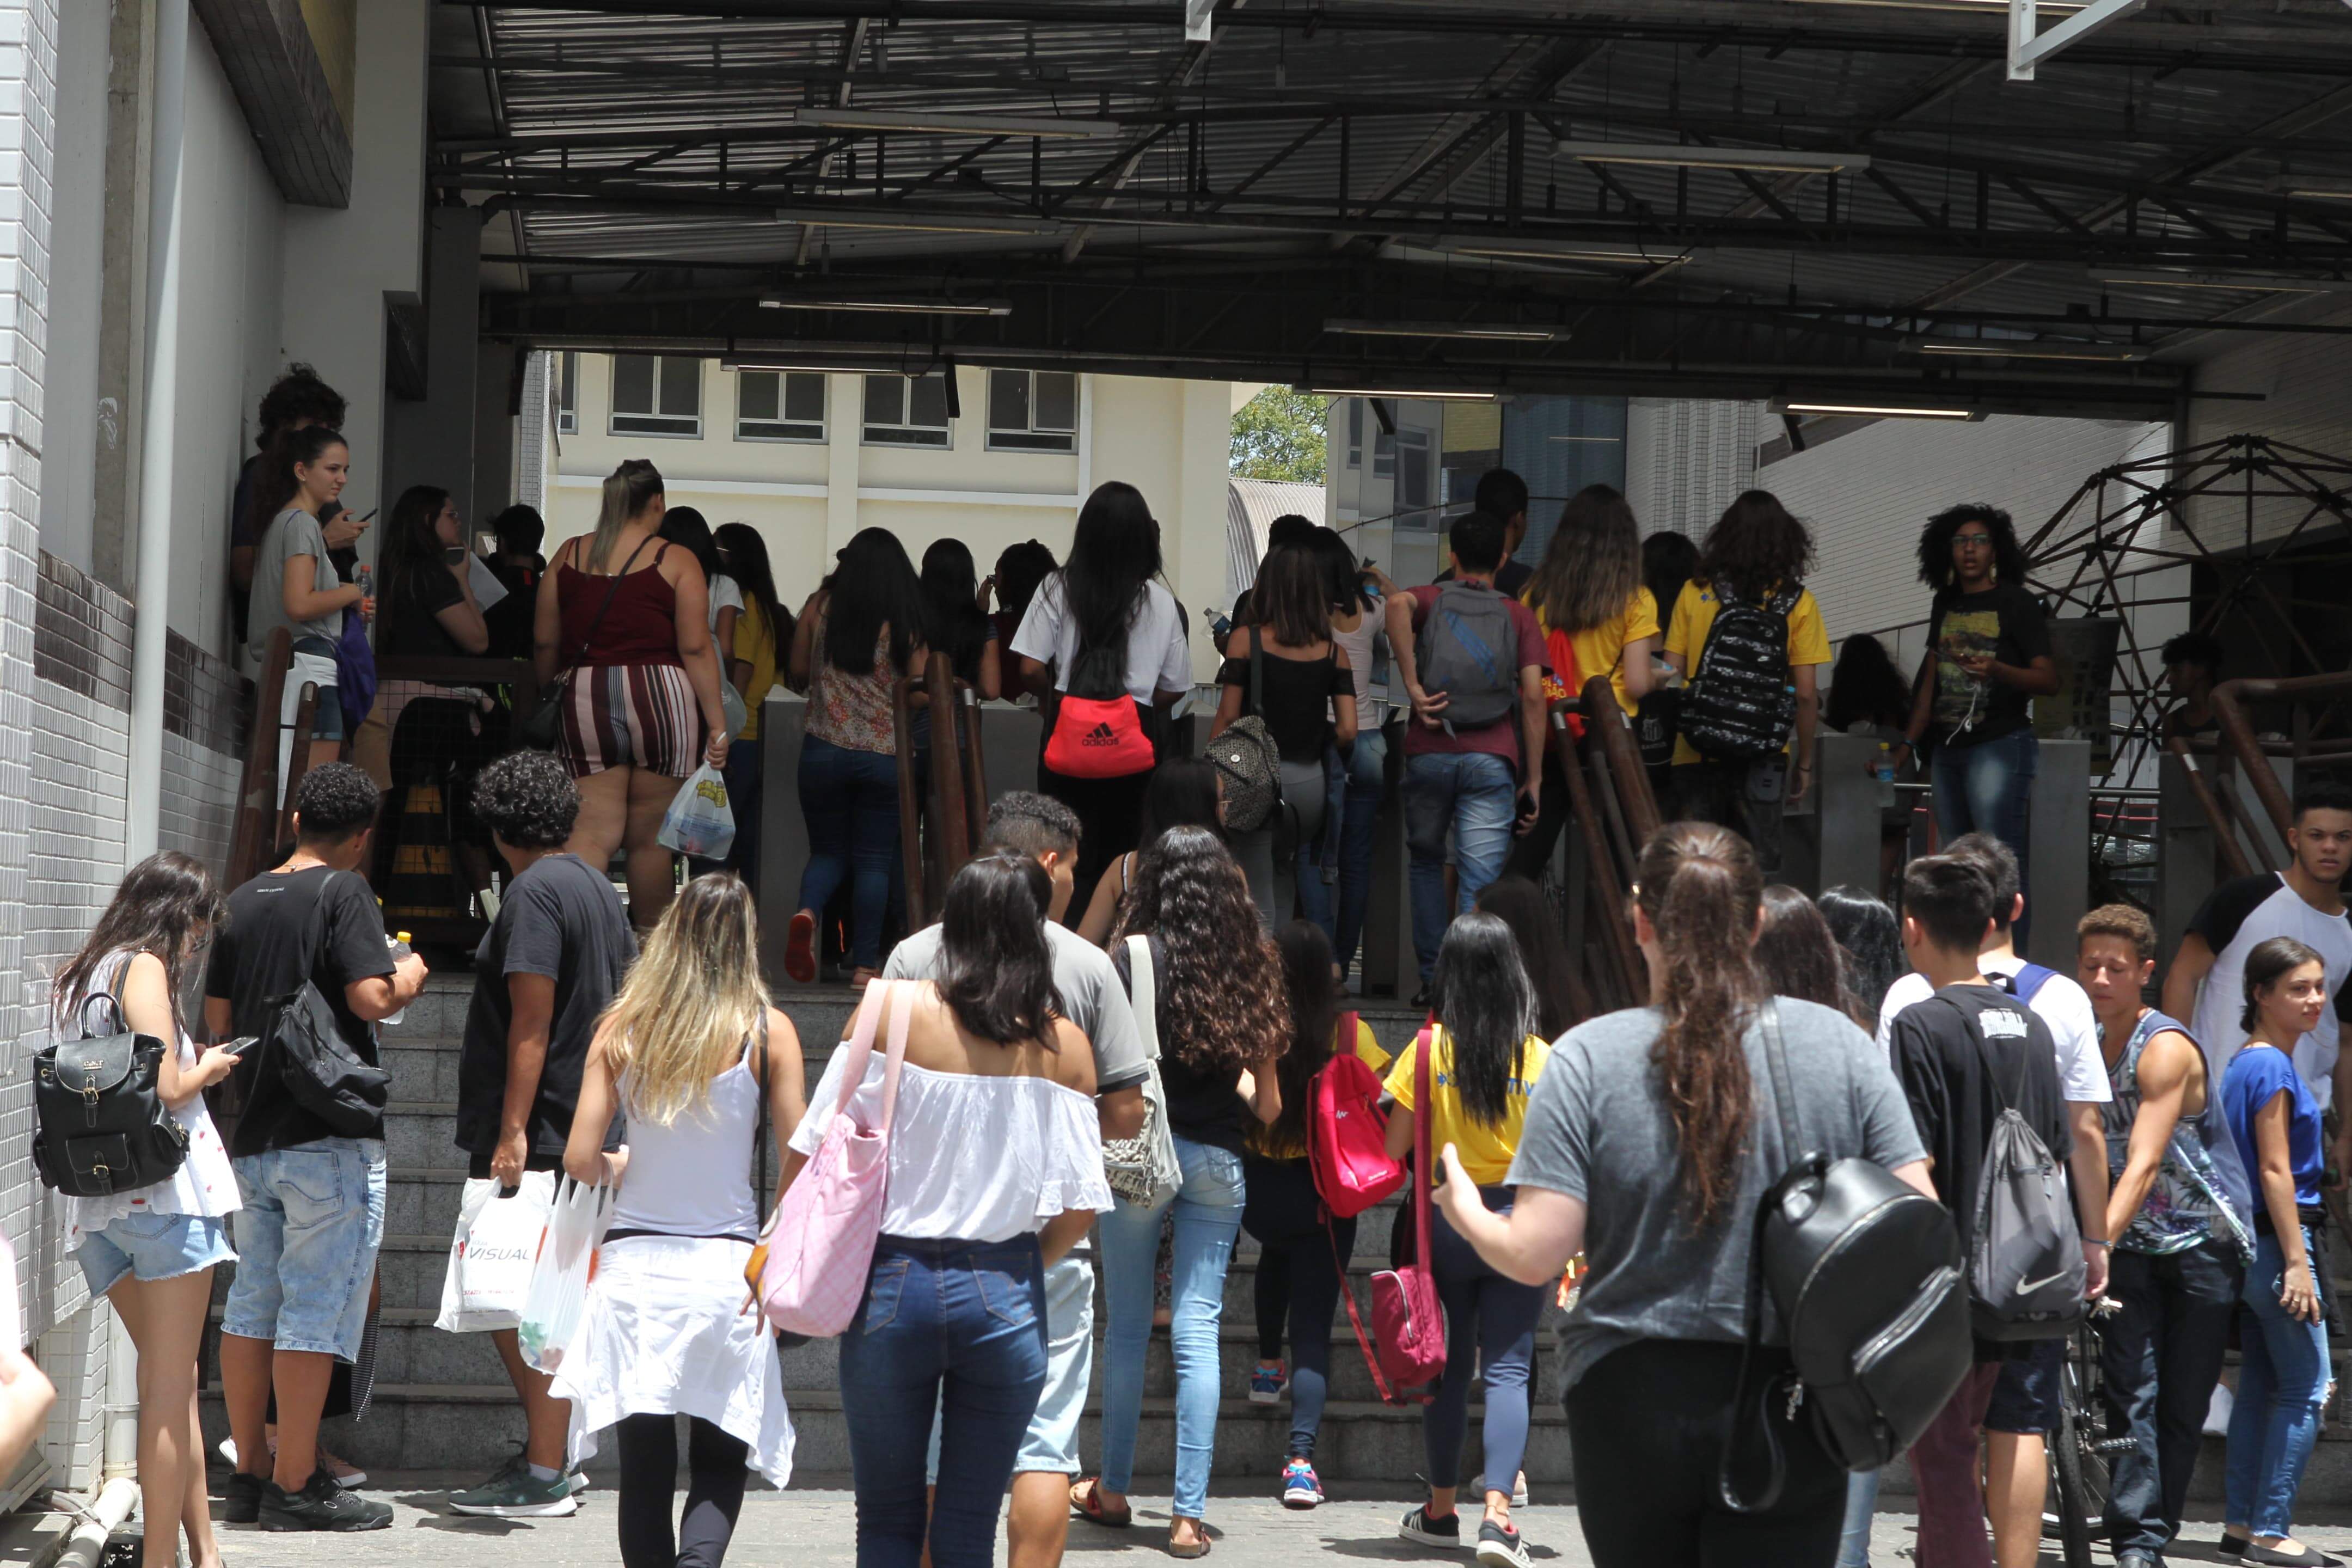 Candidatos entram em local de prova, na Vila Mathias: redação vale 20% da nota geral do exame